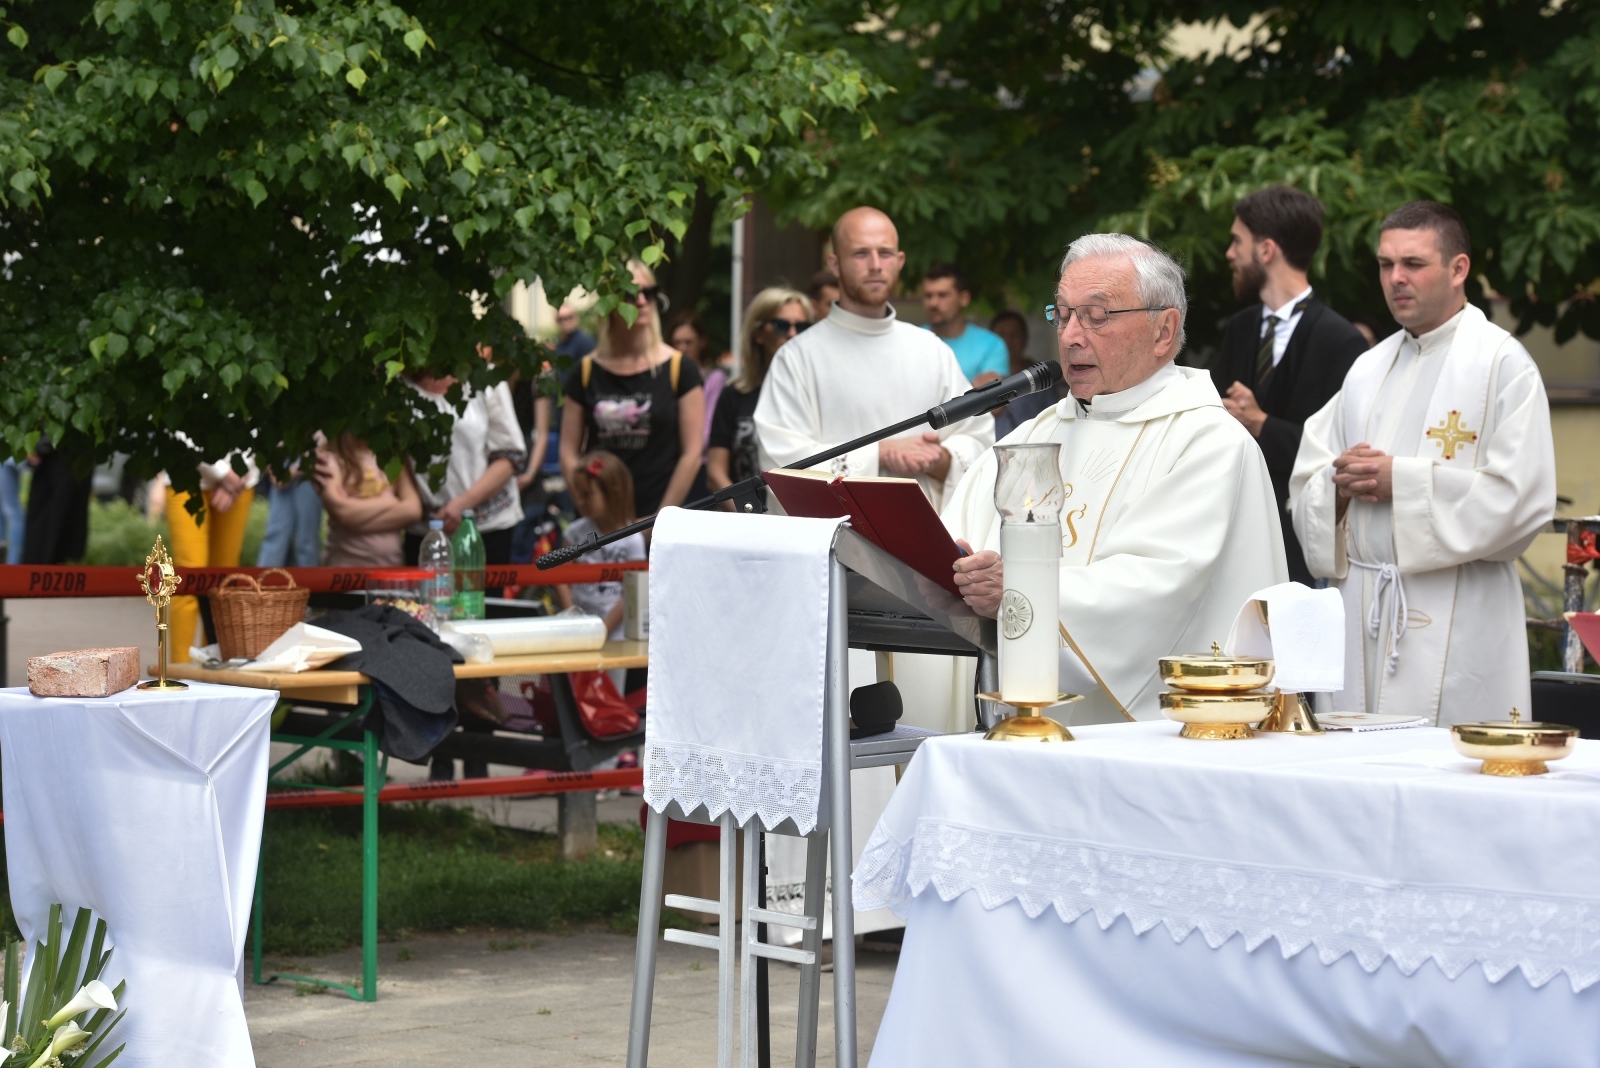 U zagrebačkom naselju Špansko danas je održana misa na otvorenom. Misa Župe blaženog Ivana Merza održana je na mjestu buduće crkve, a vjernika je bilo puno.